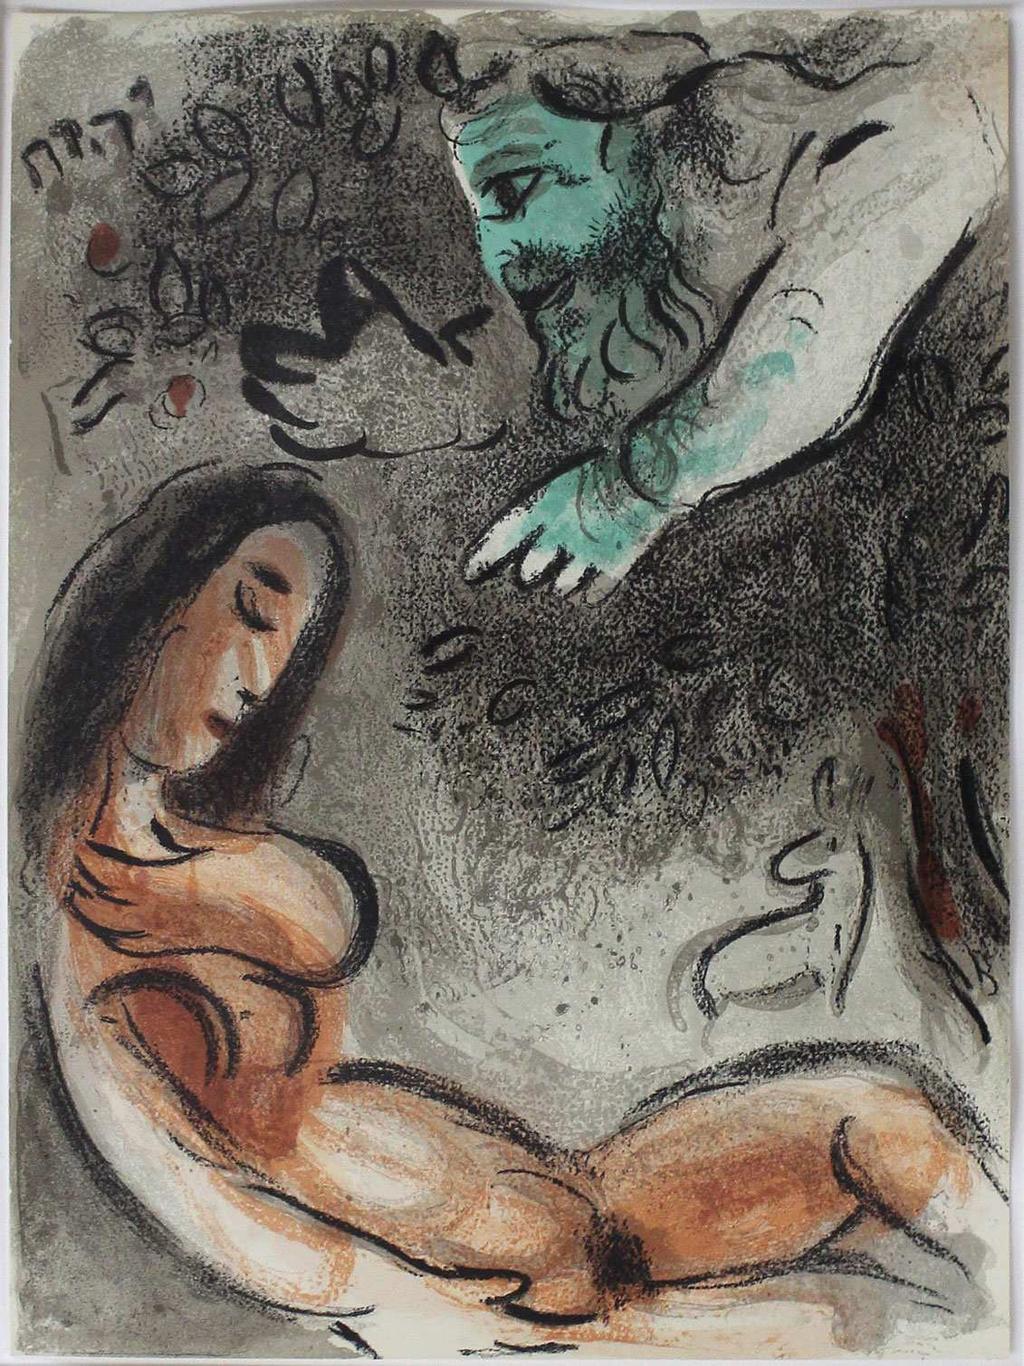 2 von 19 1 10240 Marc Chagall 1960 60 x 48 x 2 / 36 x 26 x 1 89,00 950,00 Eva maudite par Dieu Eva wird von Gott verdammt. Farblithographie aus der Folge "Dessins pour la Bible", 1960. 35,5 x 26,2 cm.